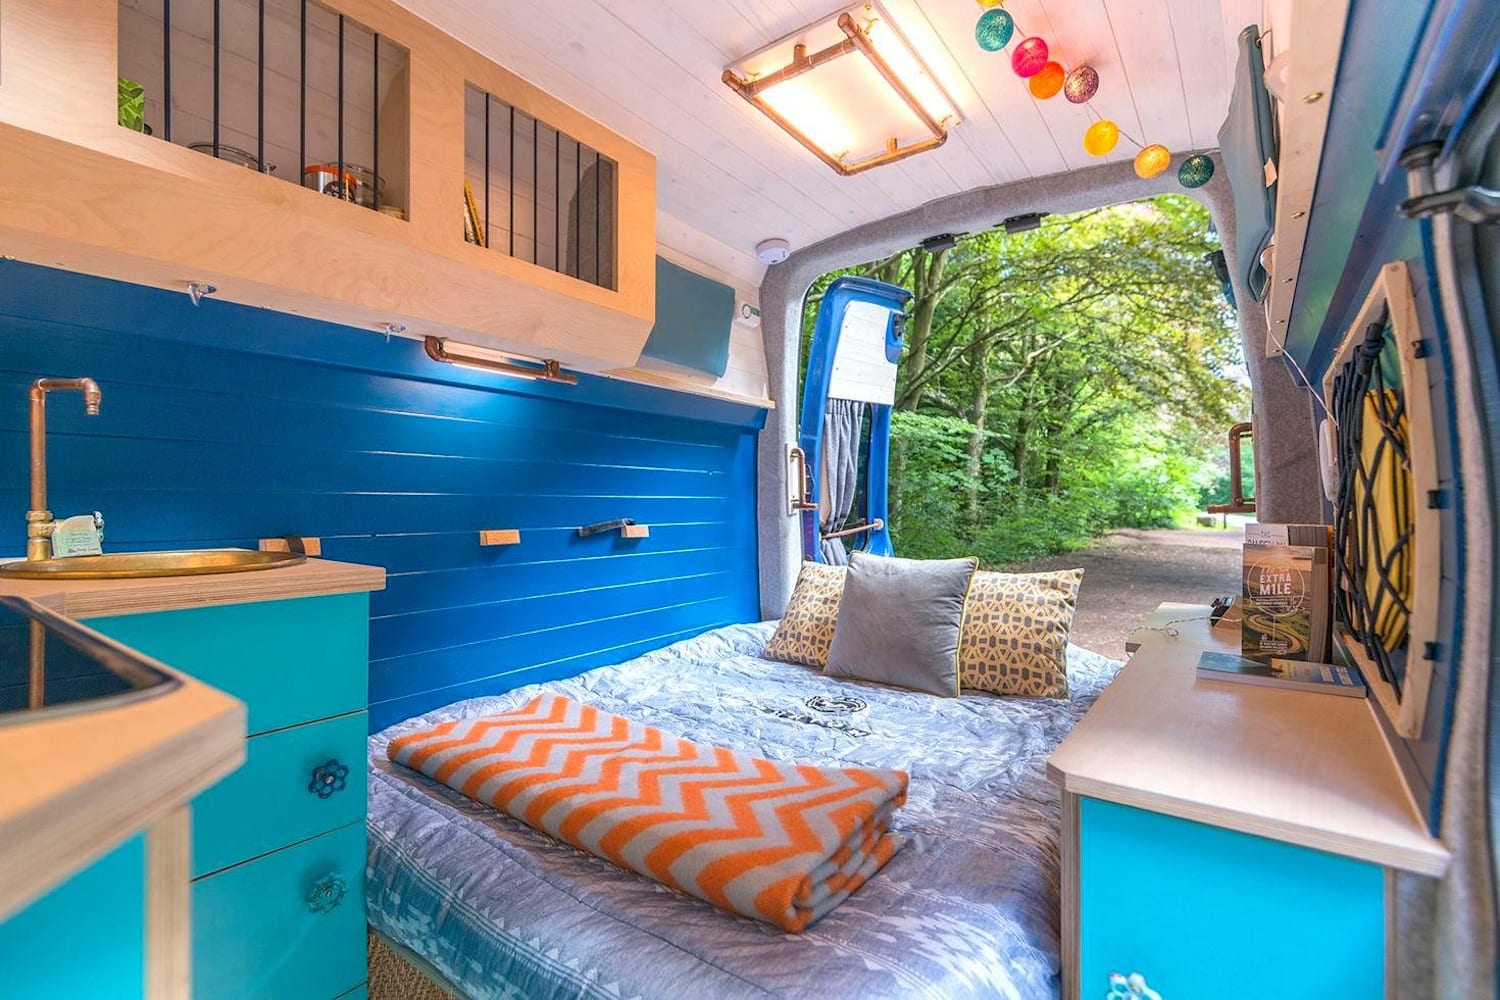 build your own van camper